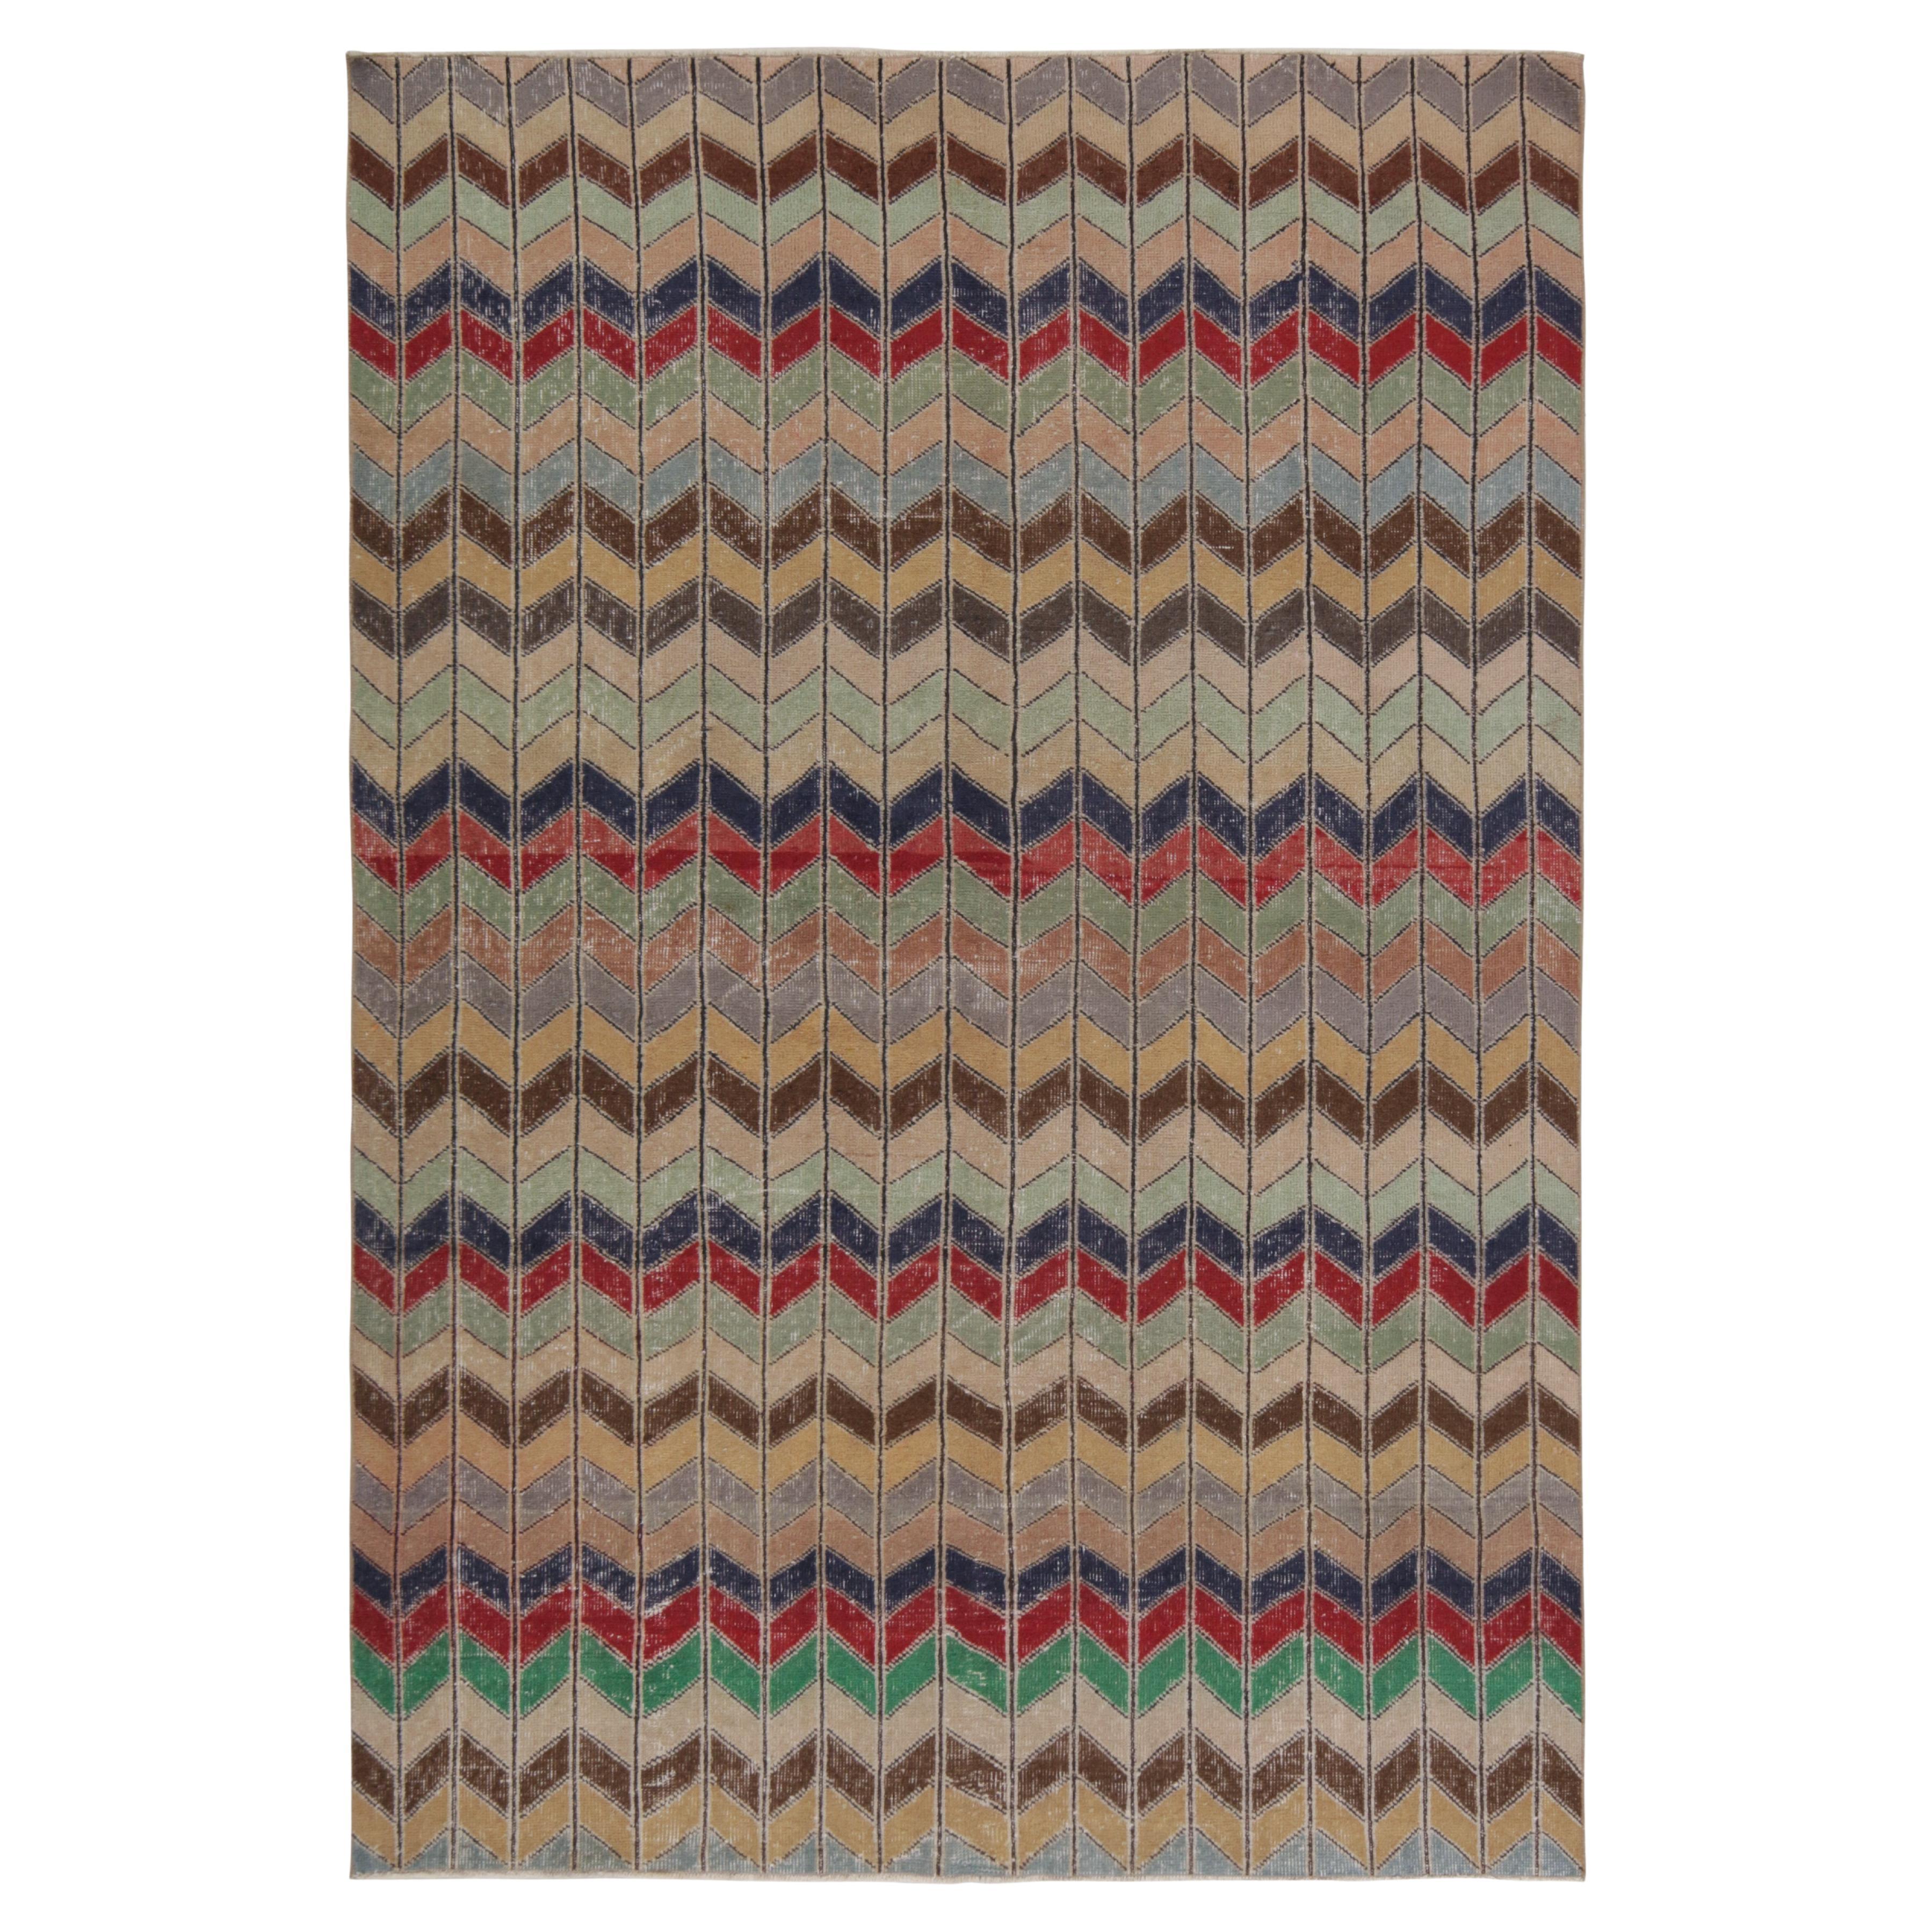 Vintage Zeki Müren Teppich in polychromen Chevron-Mustern, von Rug & Kilim